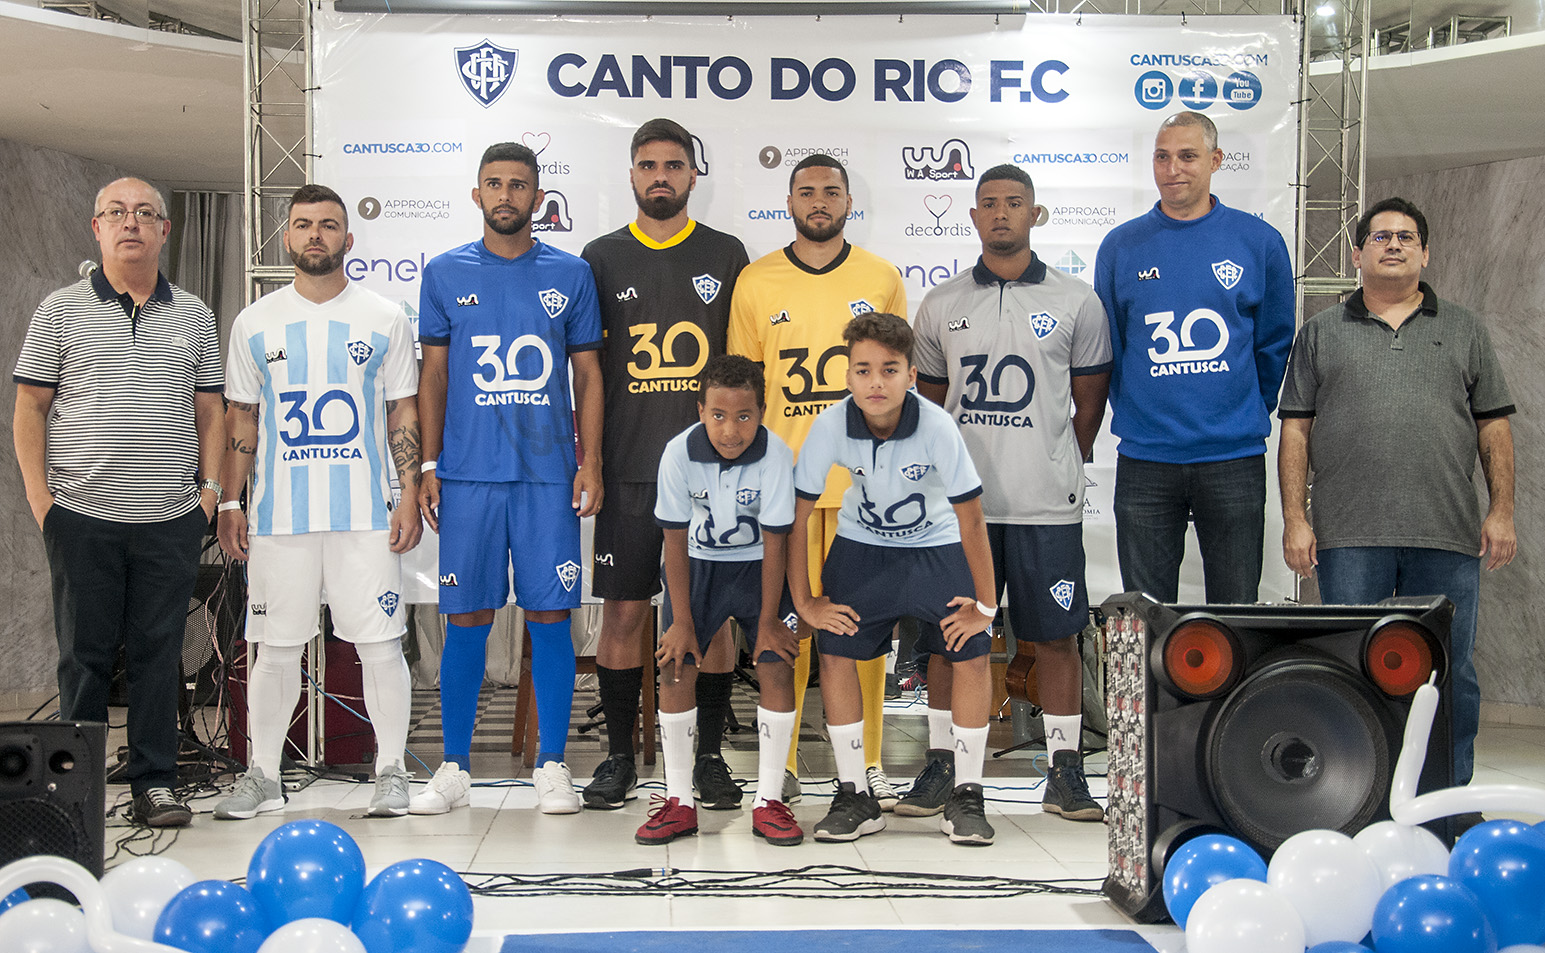 Canto do Rio - Lançamento novo uniforme e homenagem ao Gerson